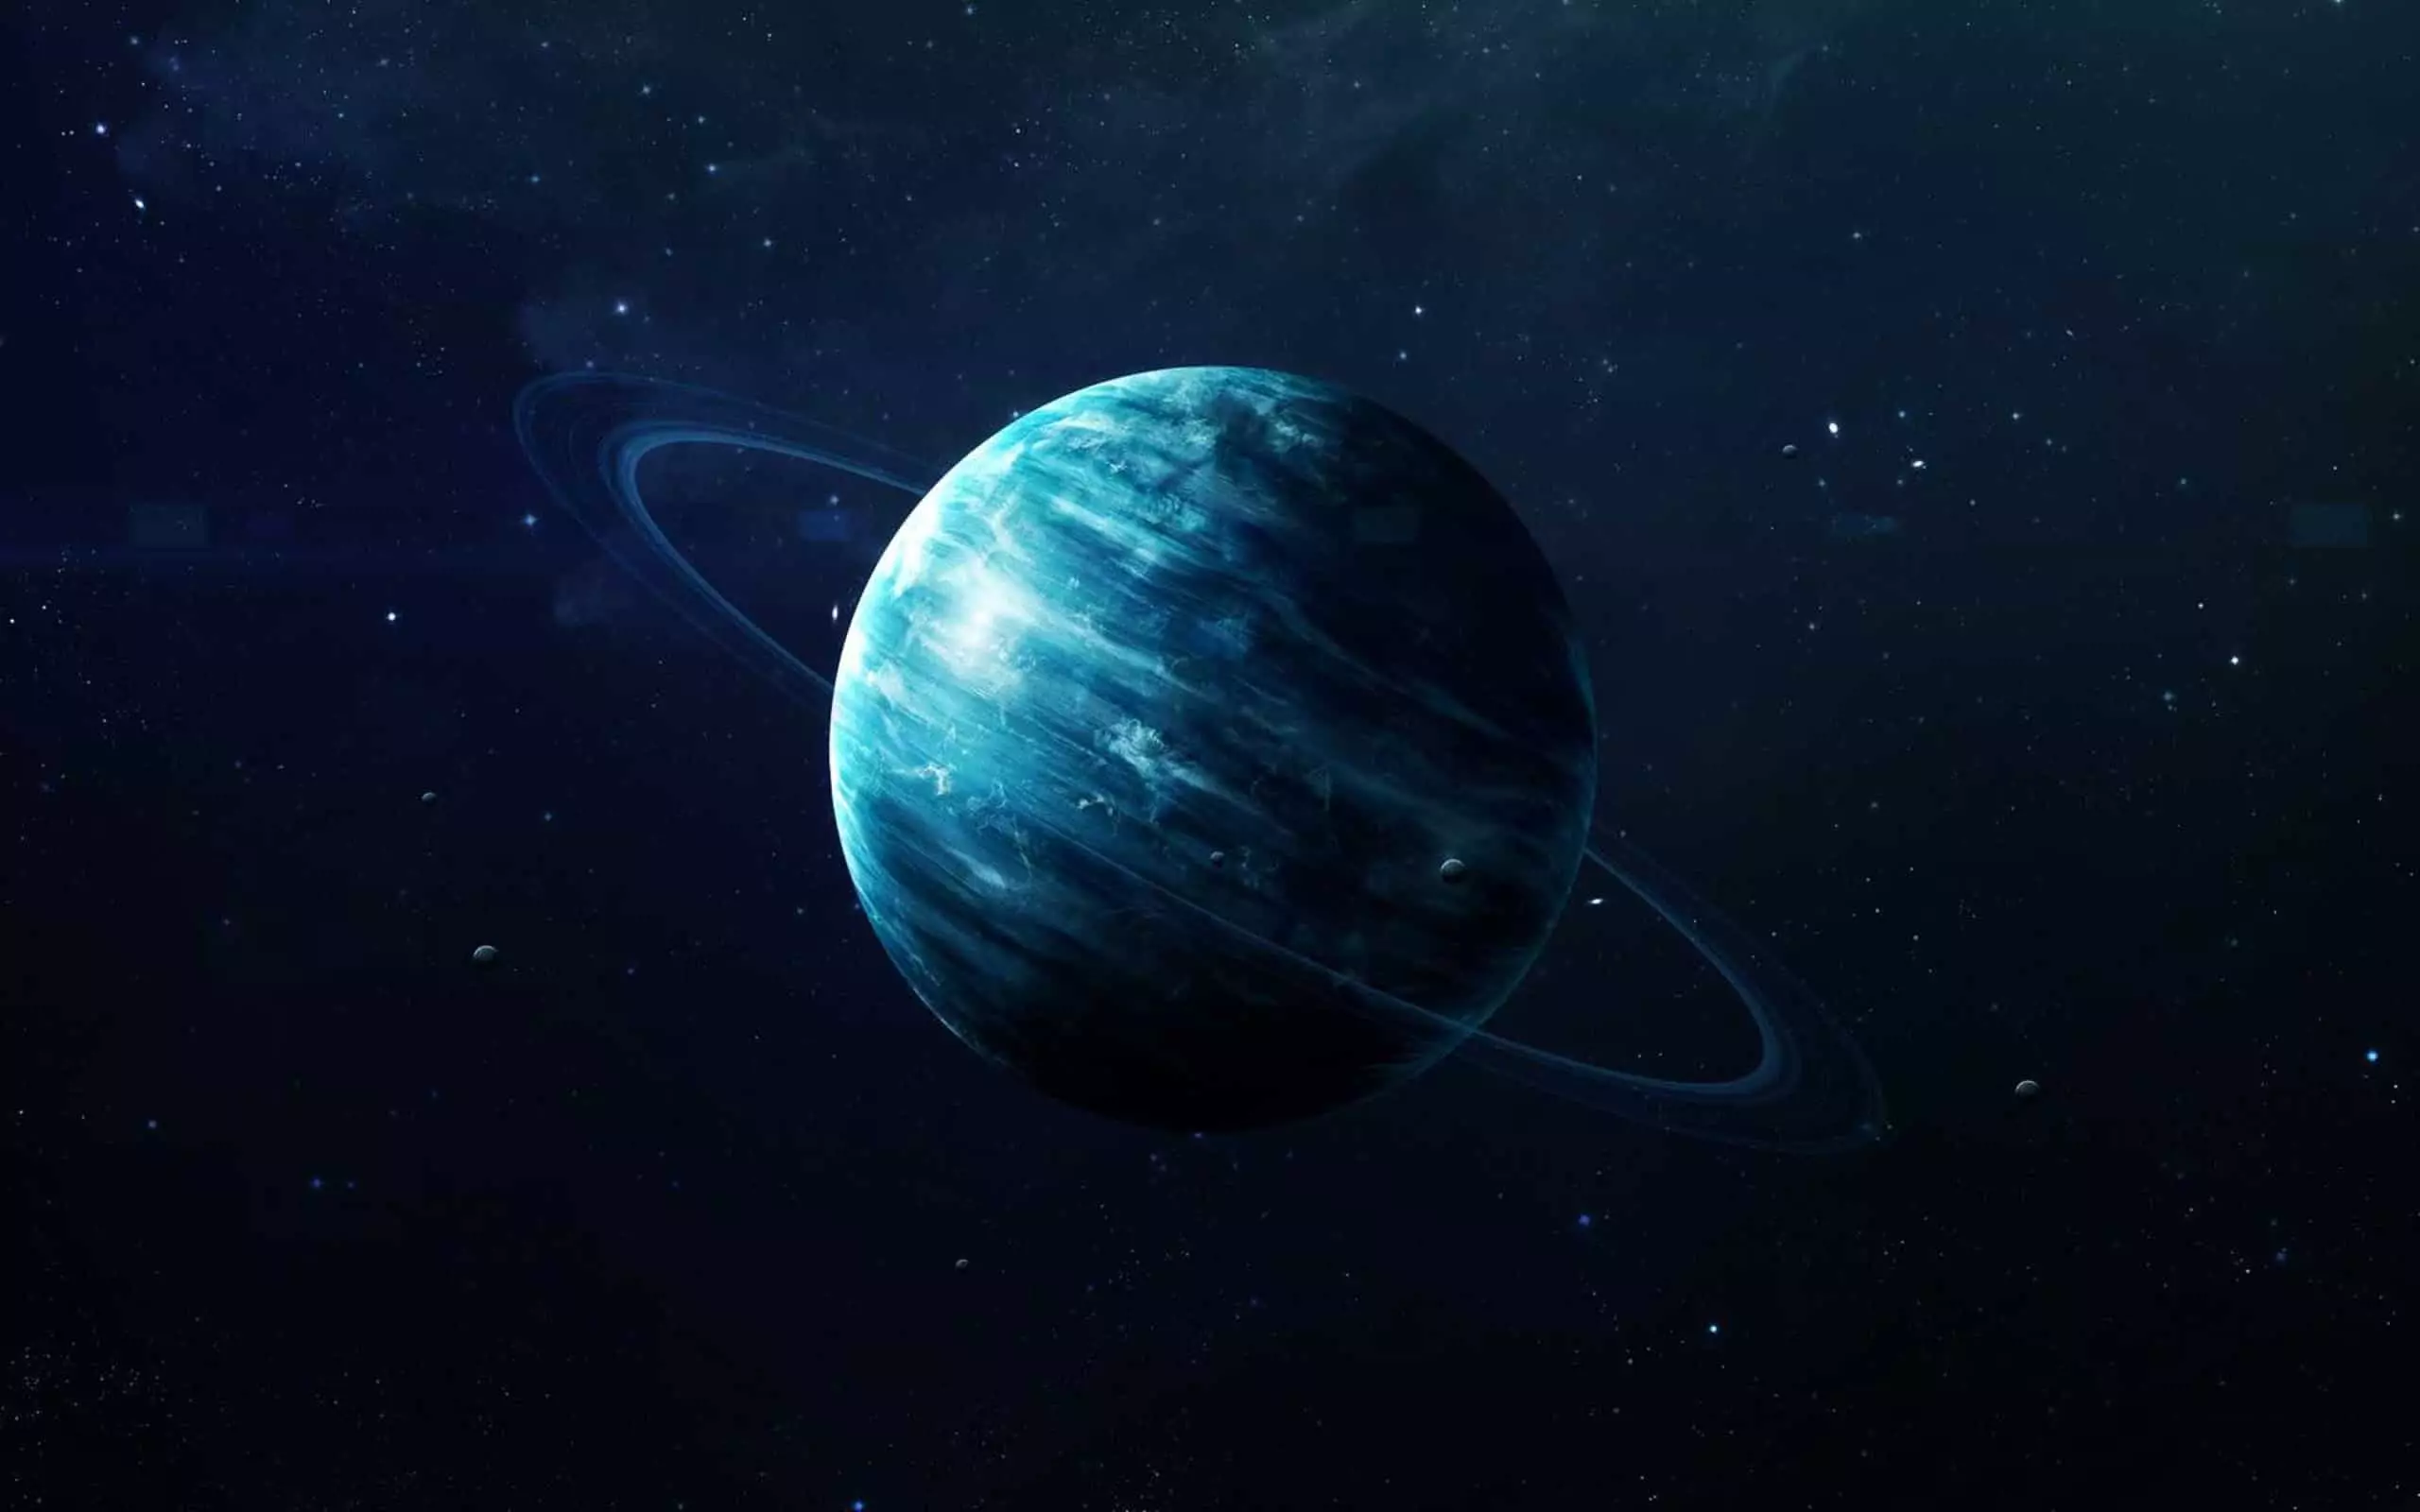 I-Uranus ezindlini ezi-4 kowesifazane nabesilisa